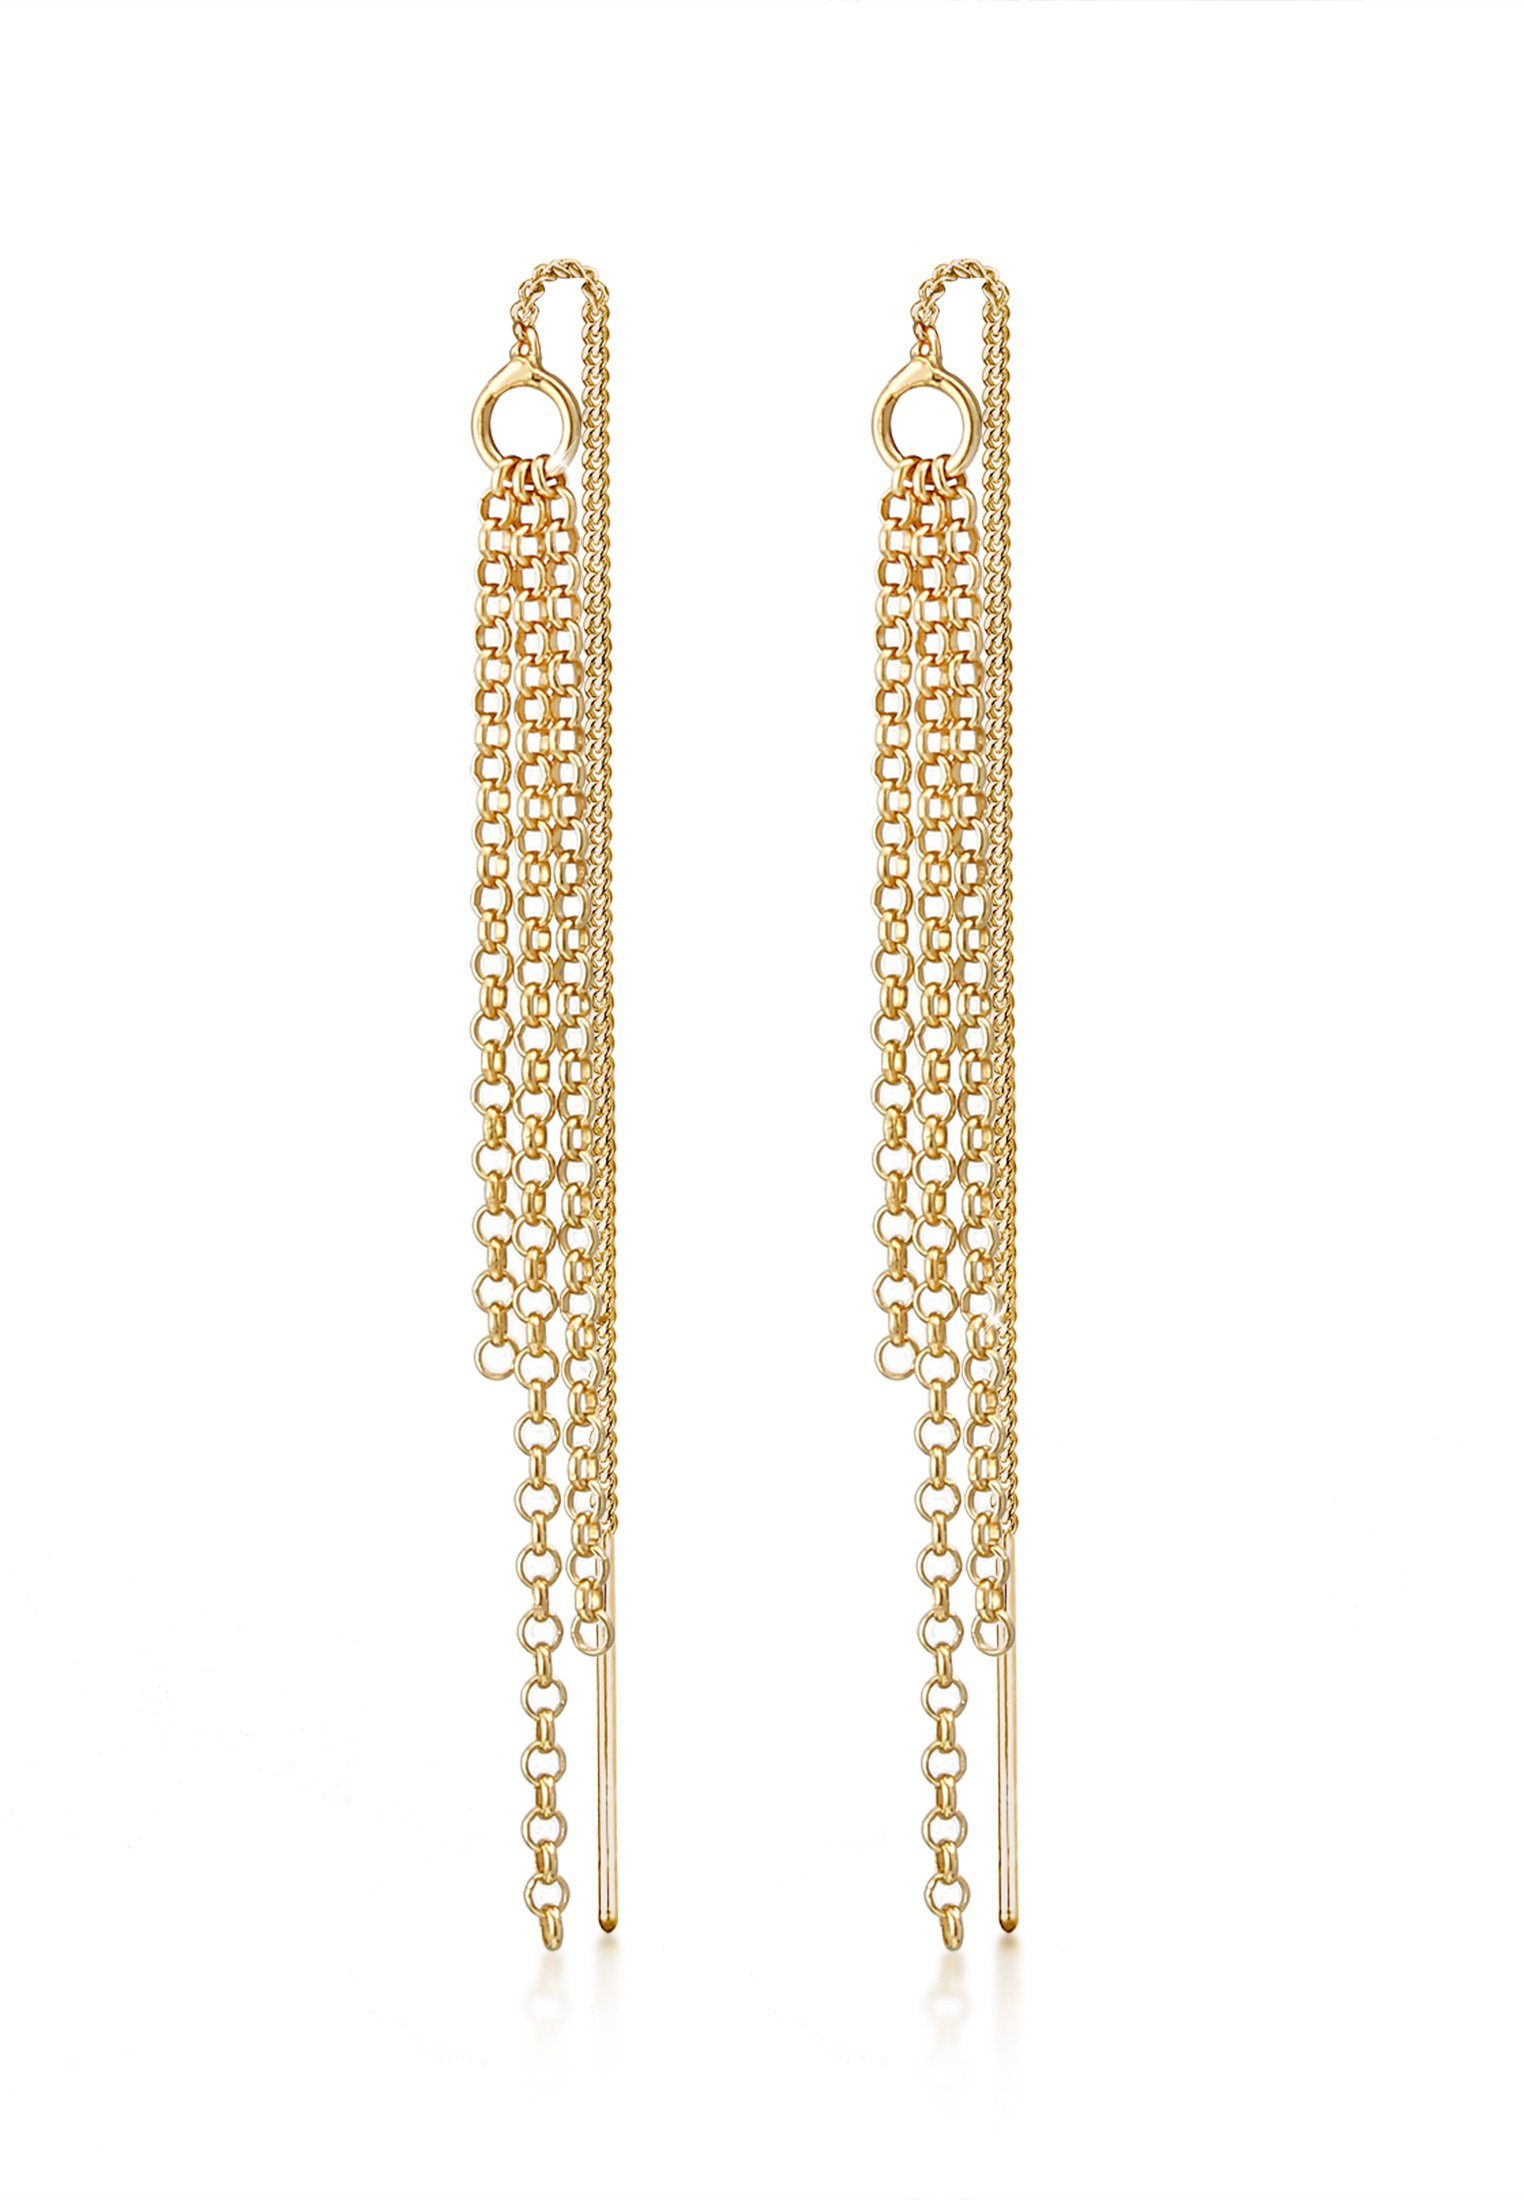 Elli Paar Ohrhänger Durchzieher Ketten Style Elegant 925 Silber Gold